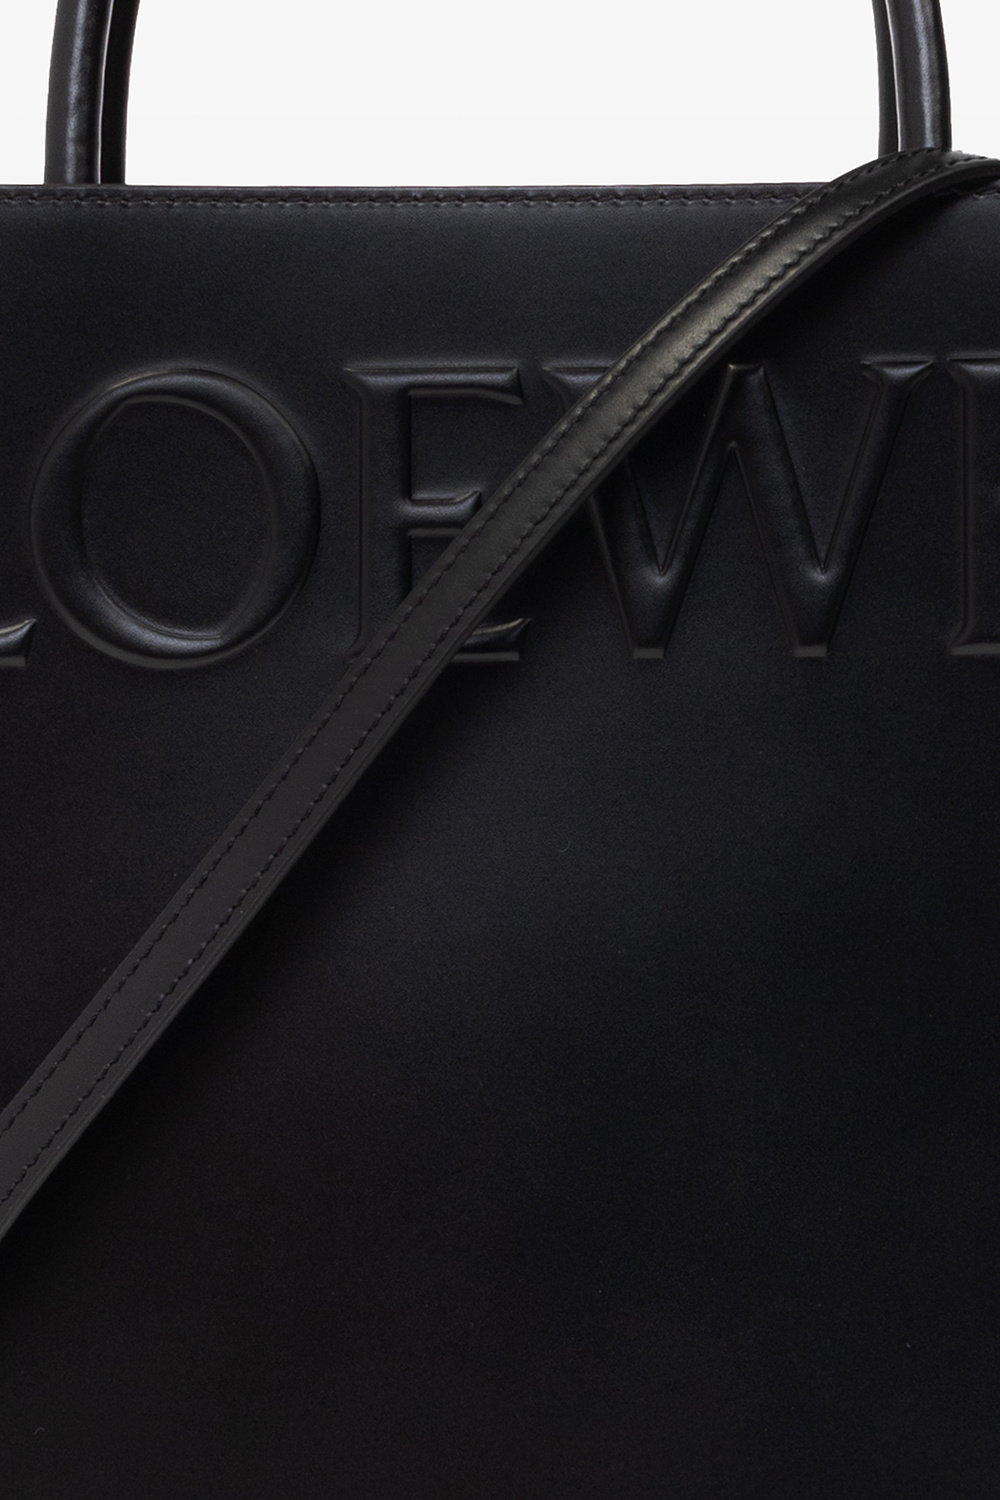 Loewe Leather shopper bag